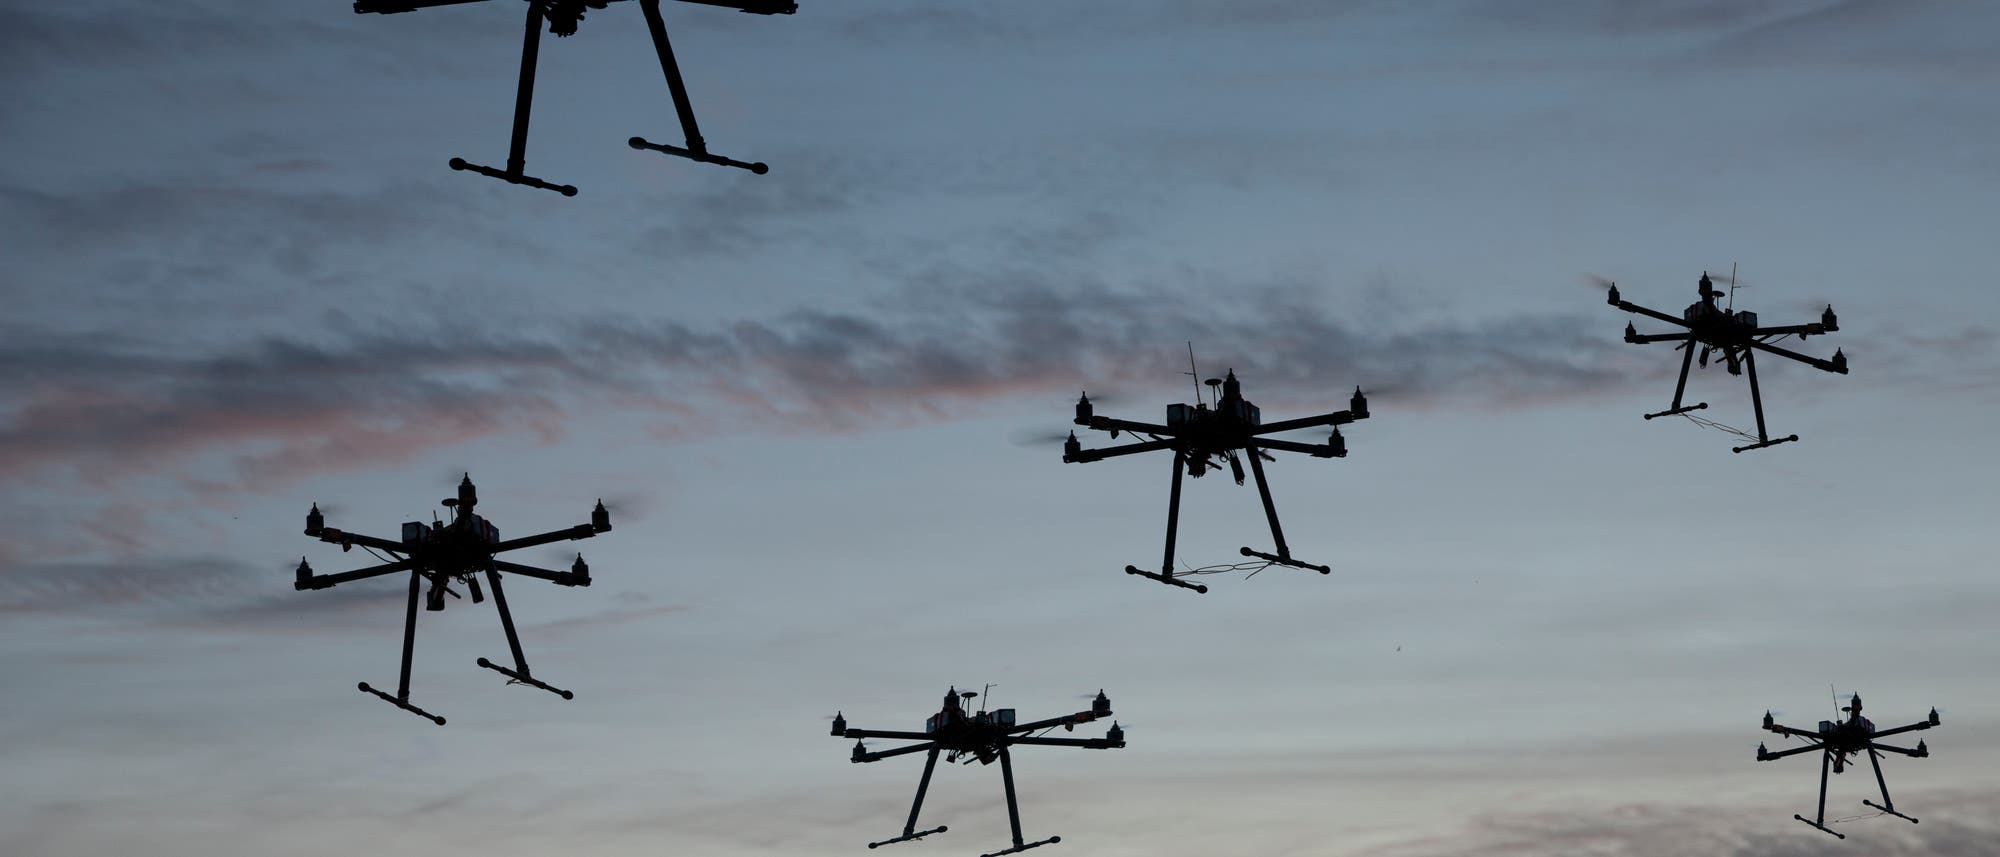 Mehrere Drohnen mit sechs Rotoren im Flug gegen den Himmel fotografiert. 